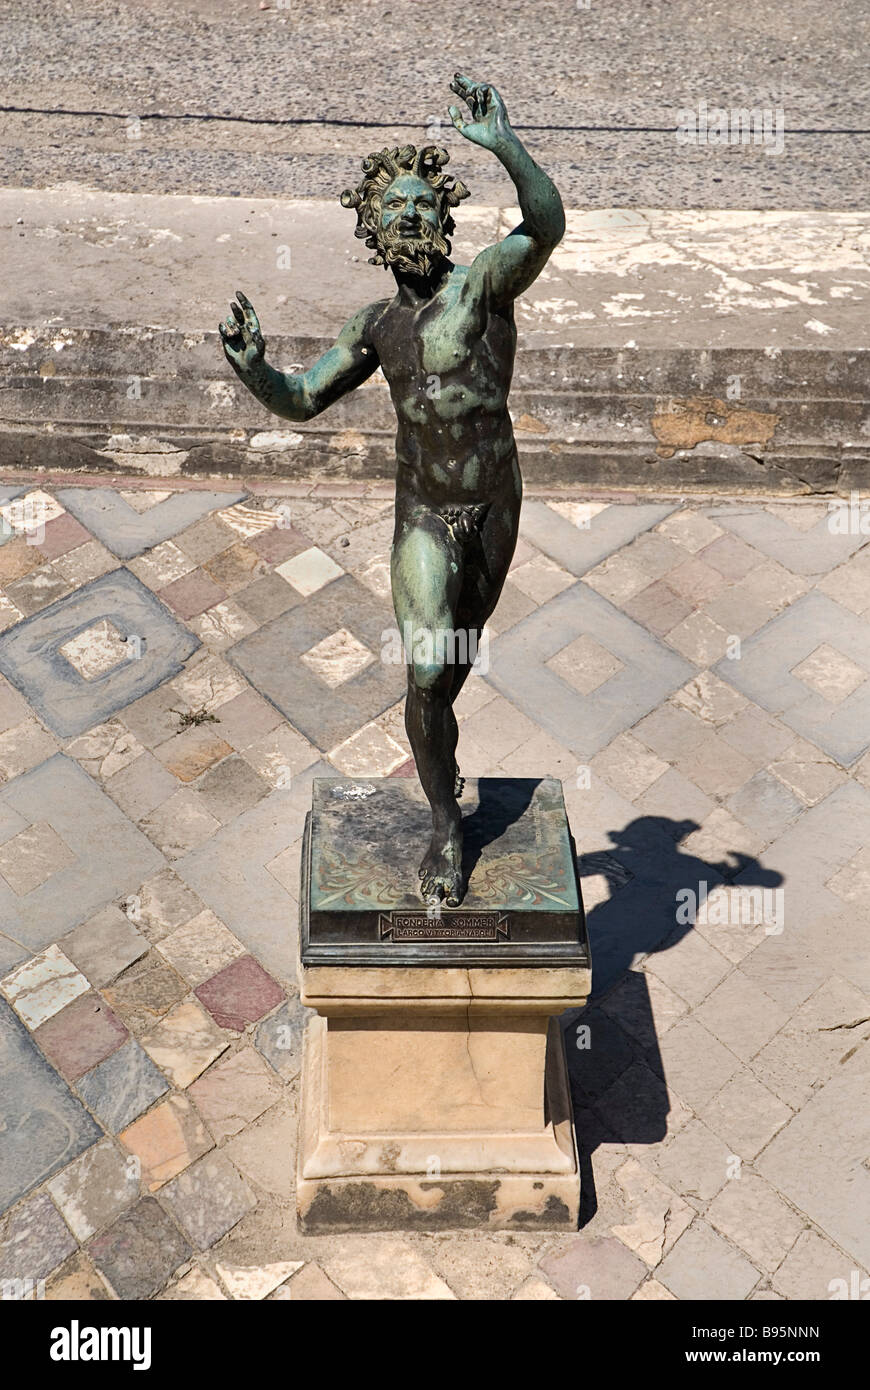 Italia, Campania, Nápoles, Pompeya, la estatua en bronce de fauno bailando en el centro de implurium en el atrio de la Casa del Fauno. Foto de stock